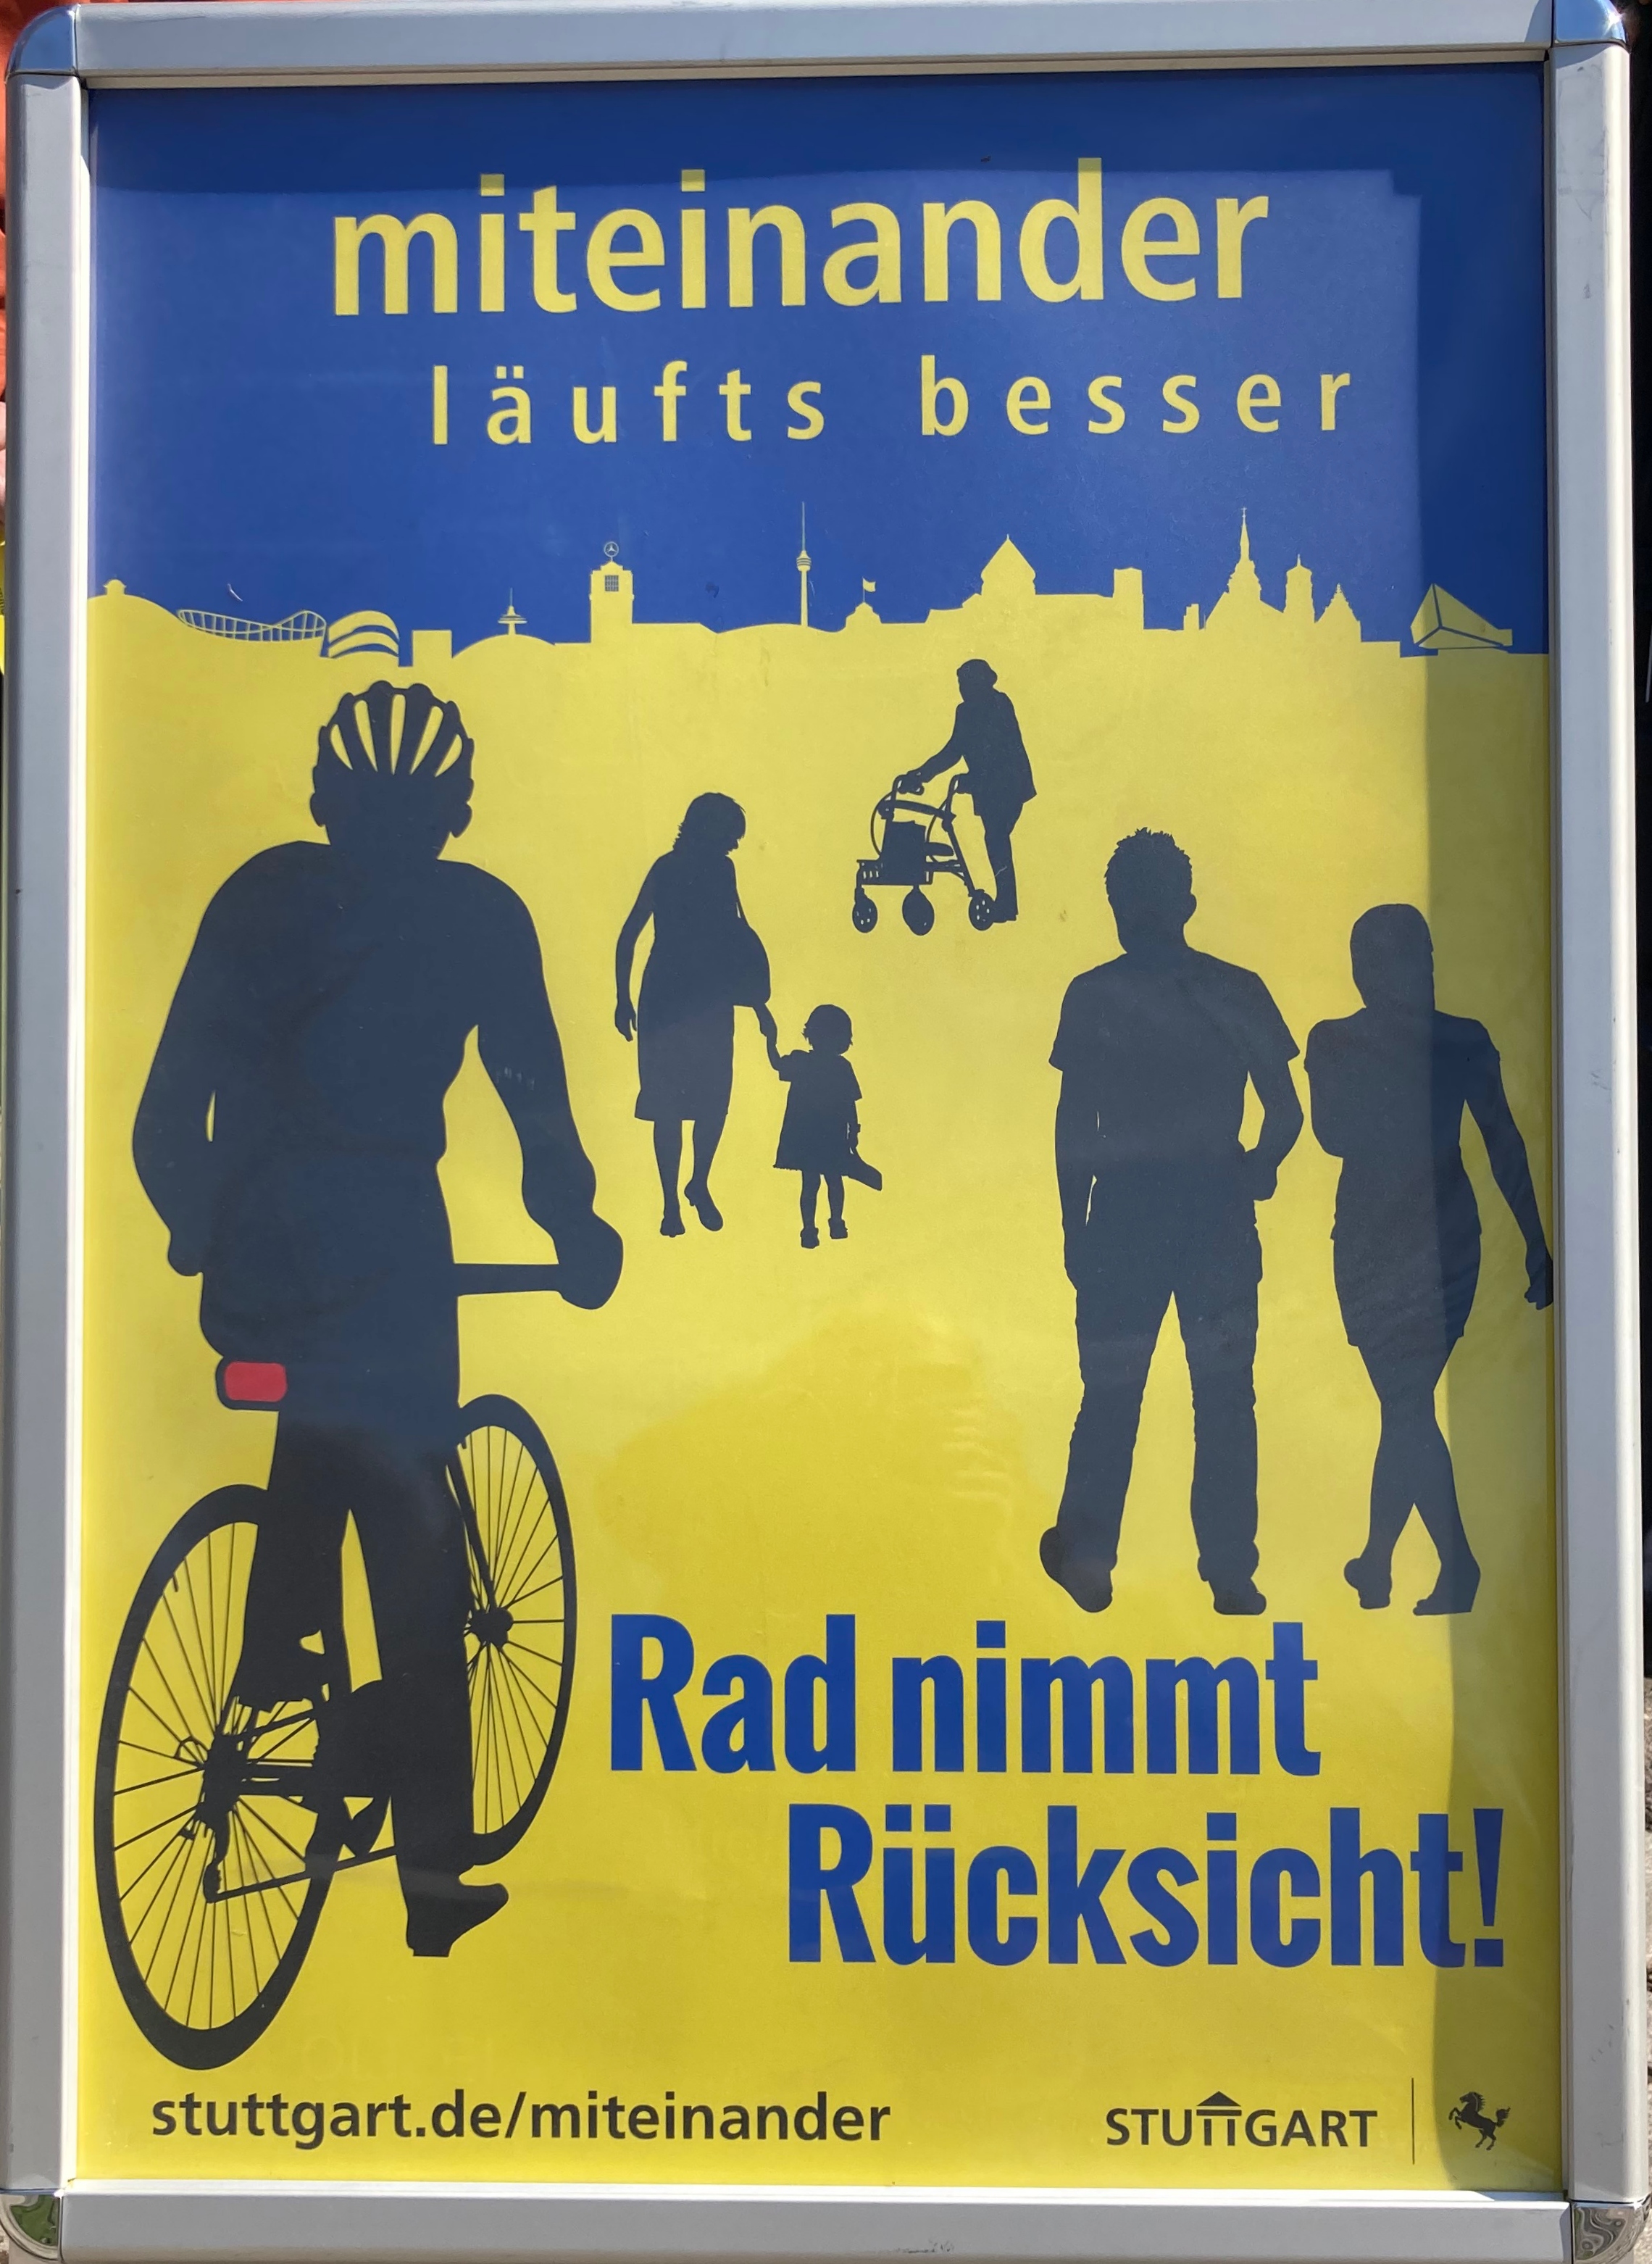 Radfahren in Stuttgart: Radfahren und Rücksicht